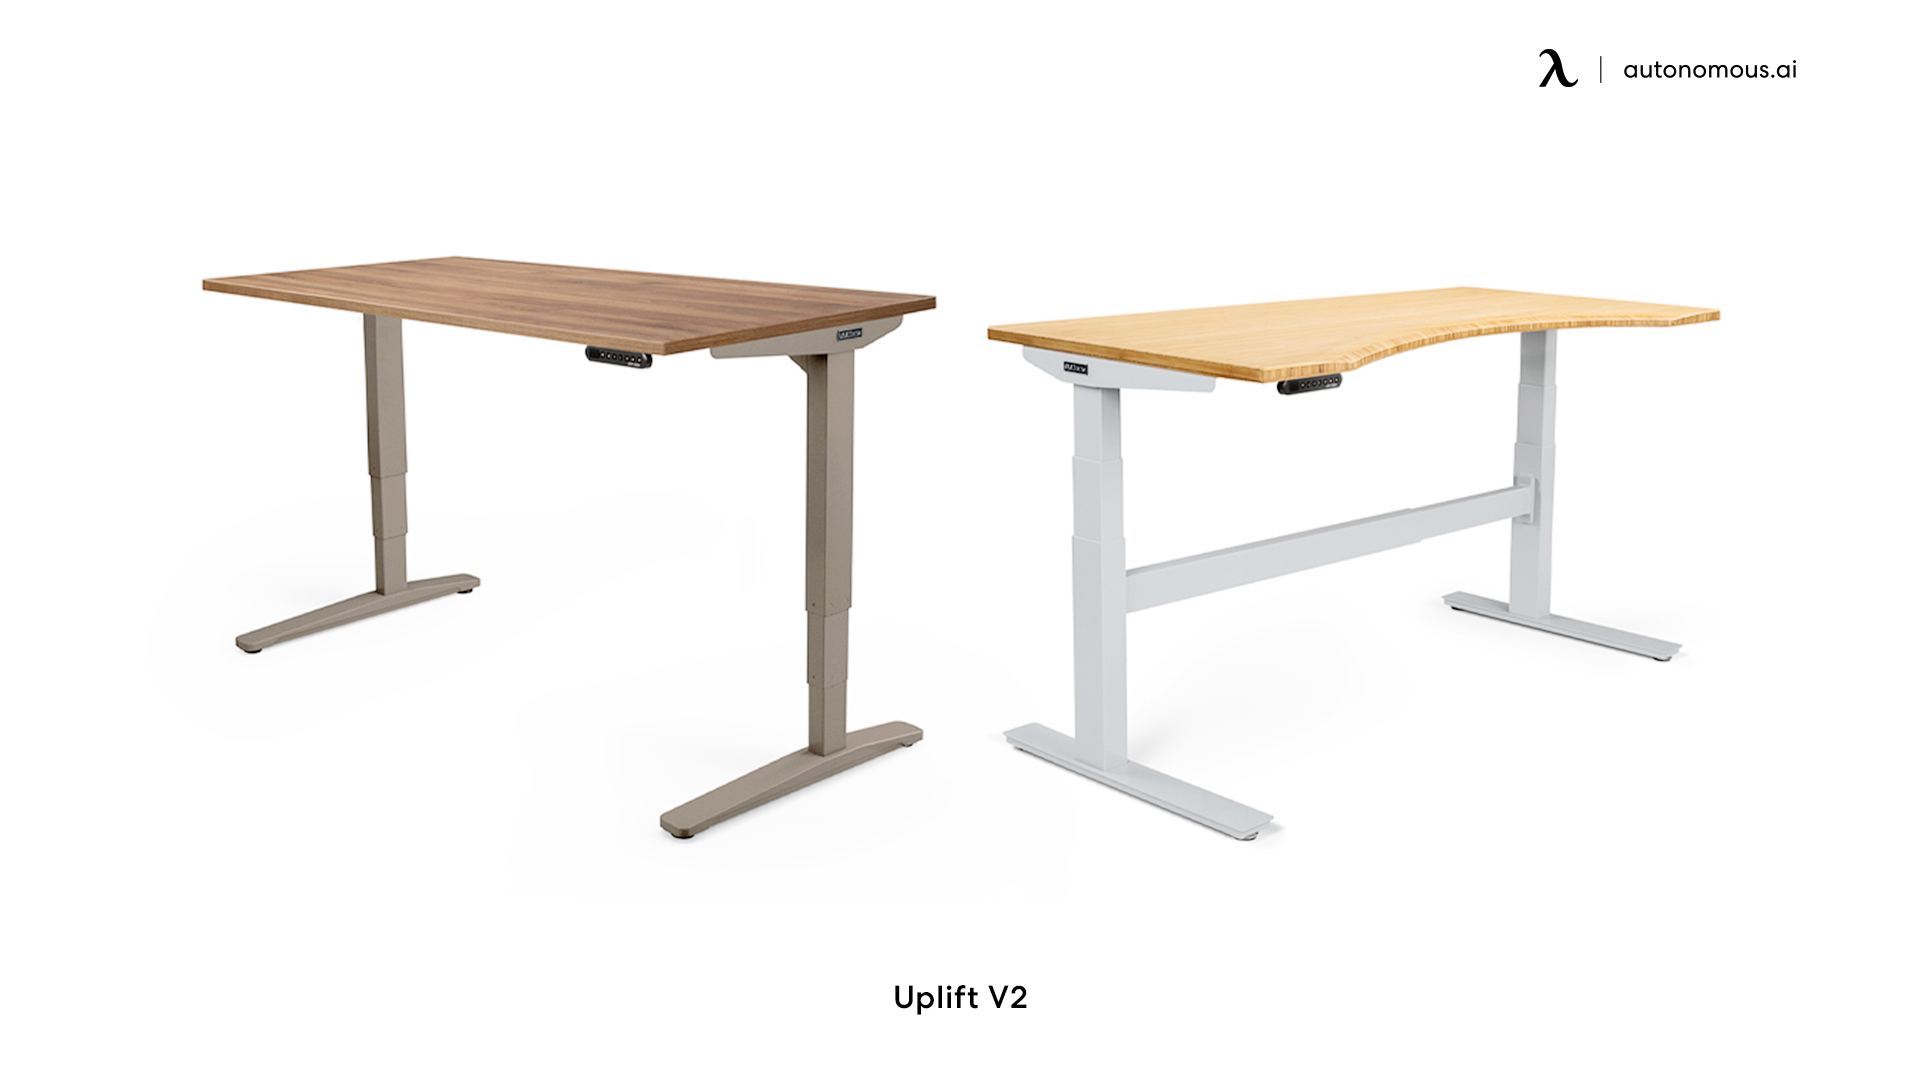 Uplift V2 72-inch standing desk